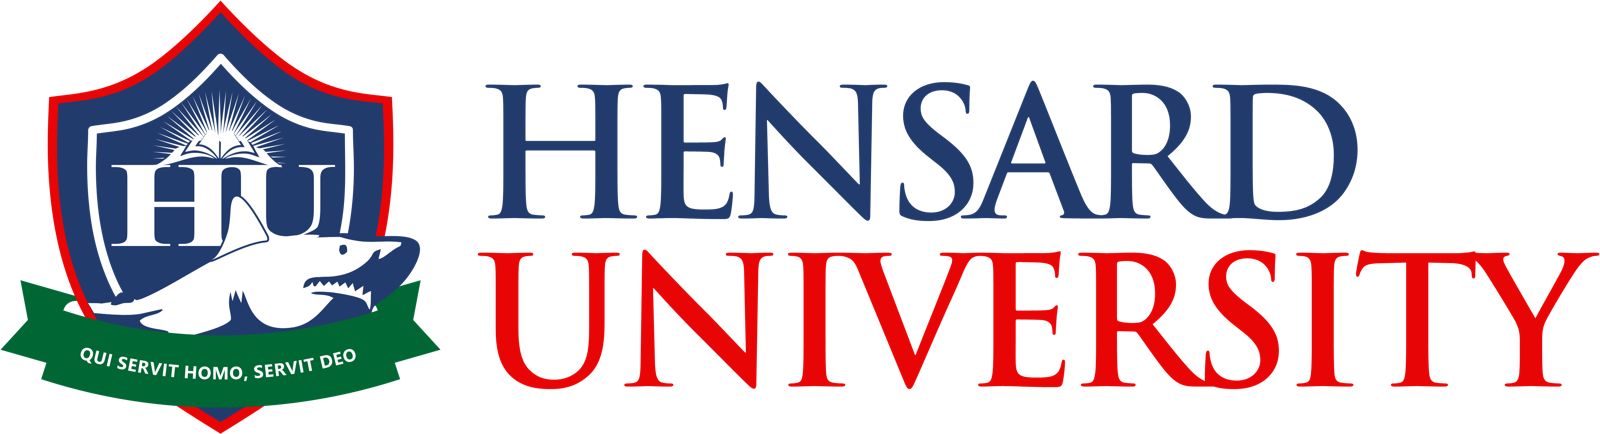 Hensard University: Henry Seriake Dickson Foundation Rolls Out Agricultural Entrepreneurship Scholarships